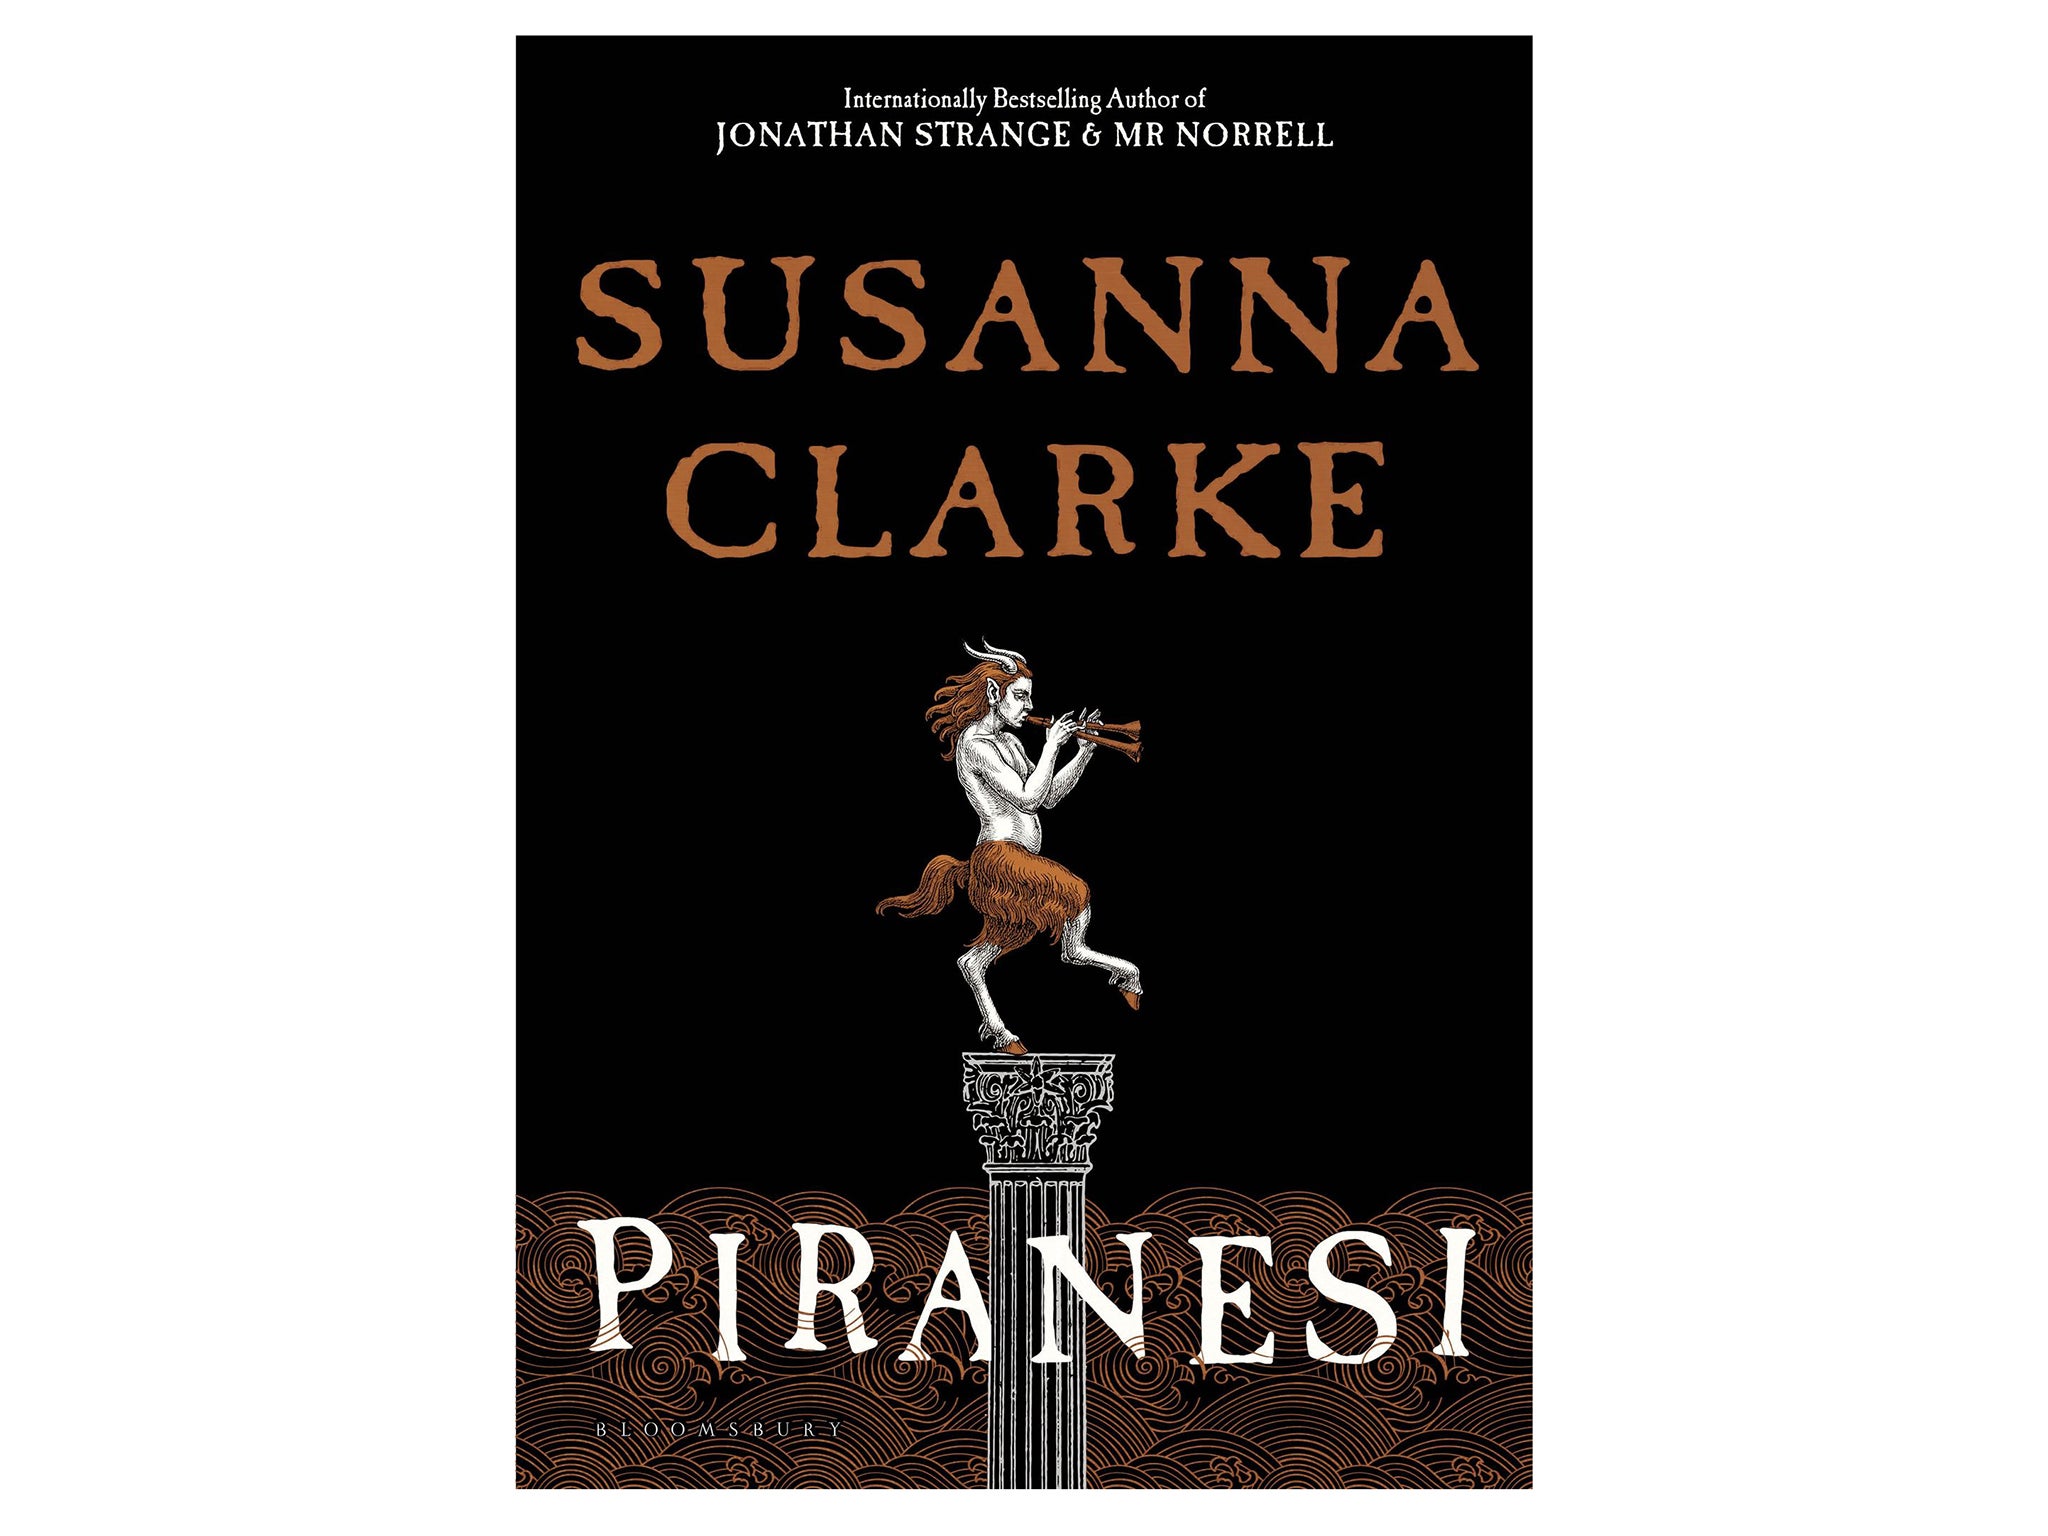 womens-prize-for-fiction-shortlist-indybest- Piranesi, Susanna Clarke.jpg